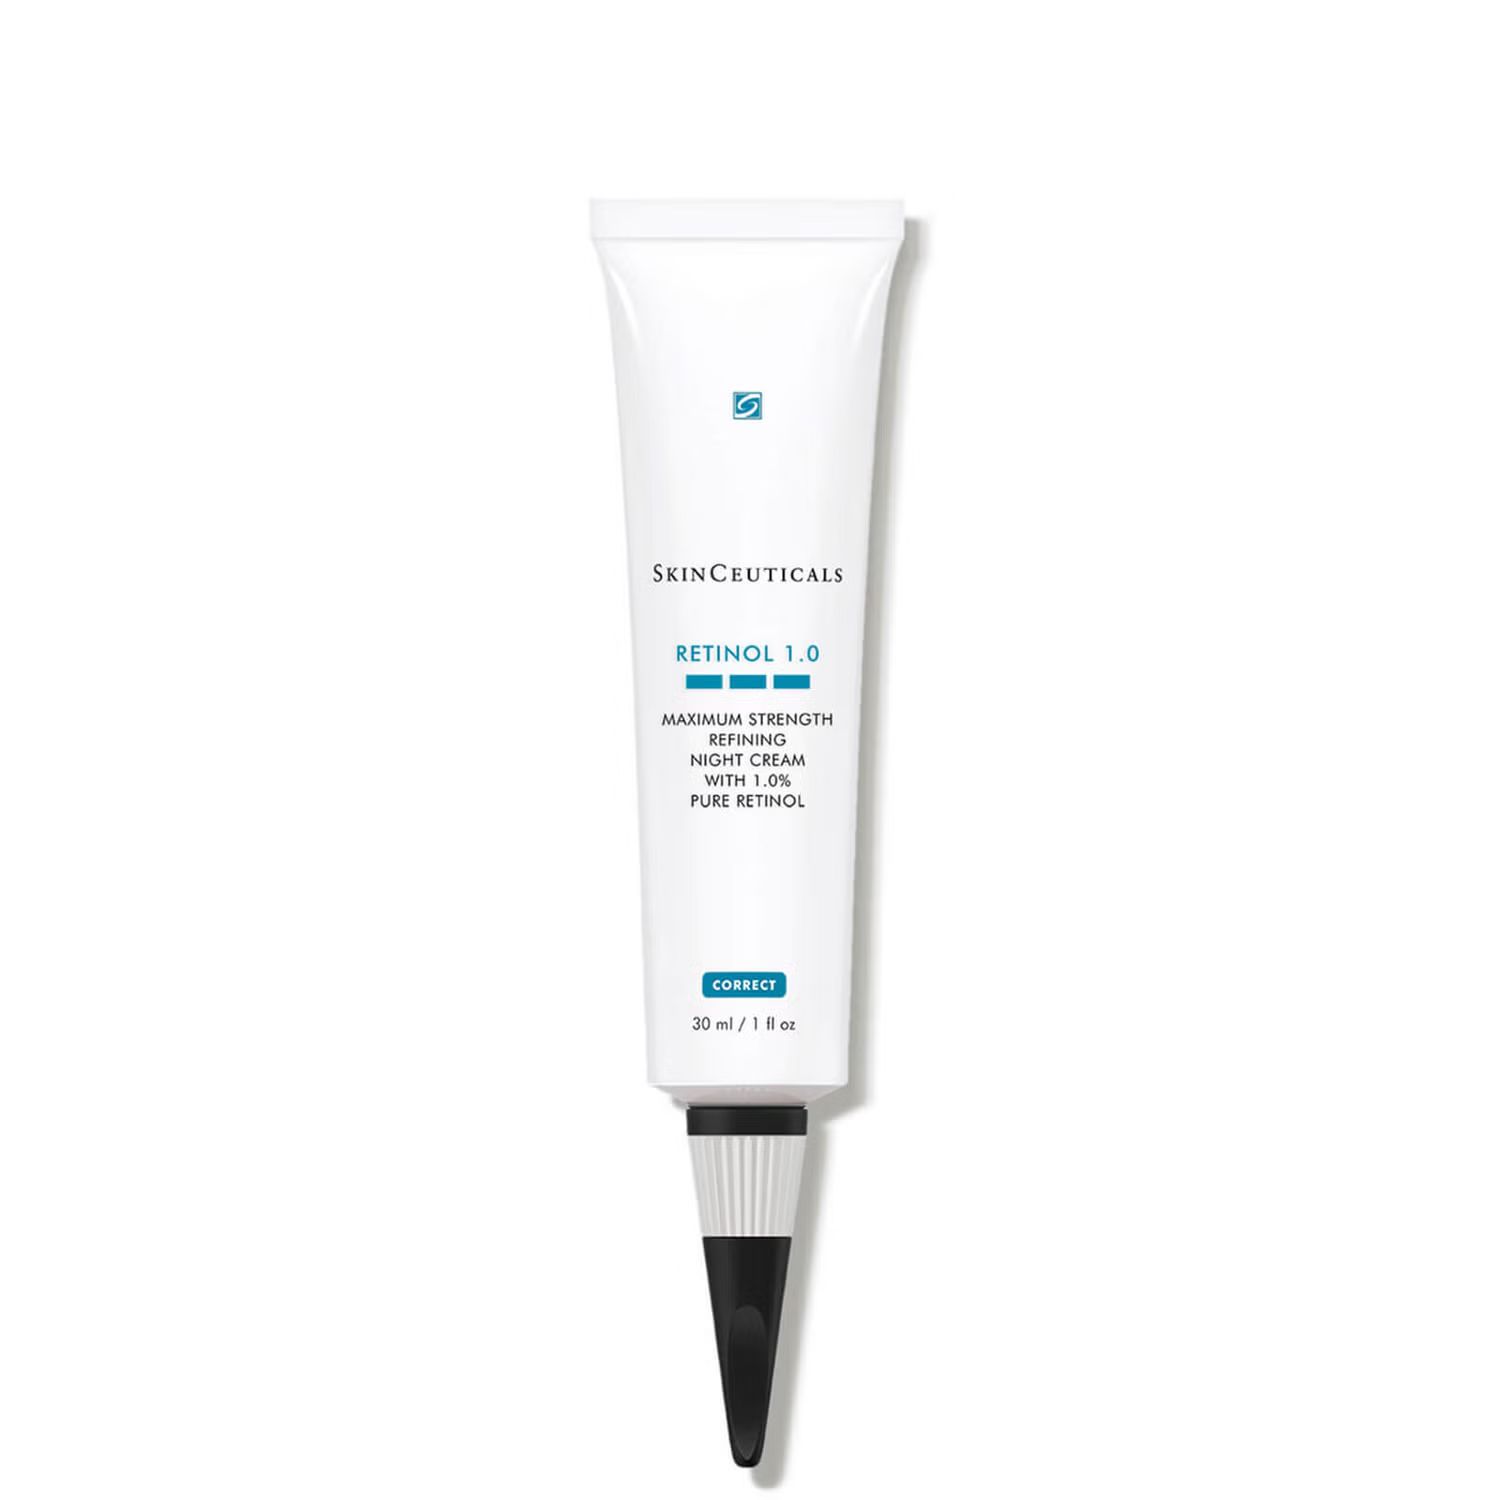 SkinCeuticals Retinol 1.0 Maximum Strength Refining Night Cream (1 fl. oz.) | Dermstore